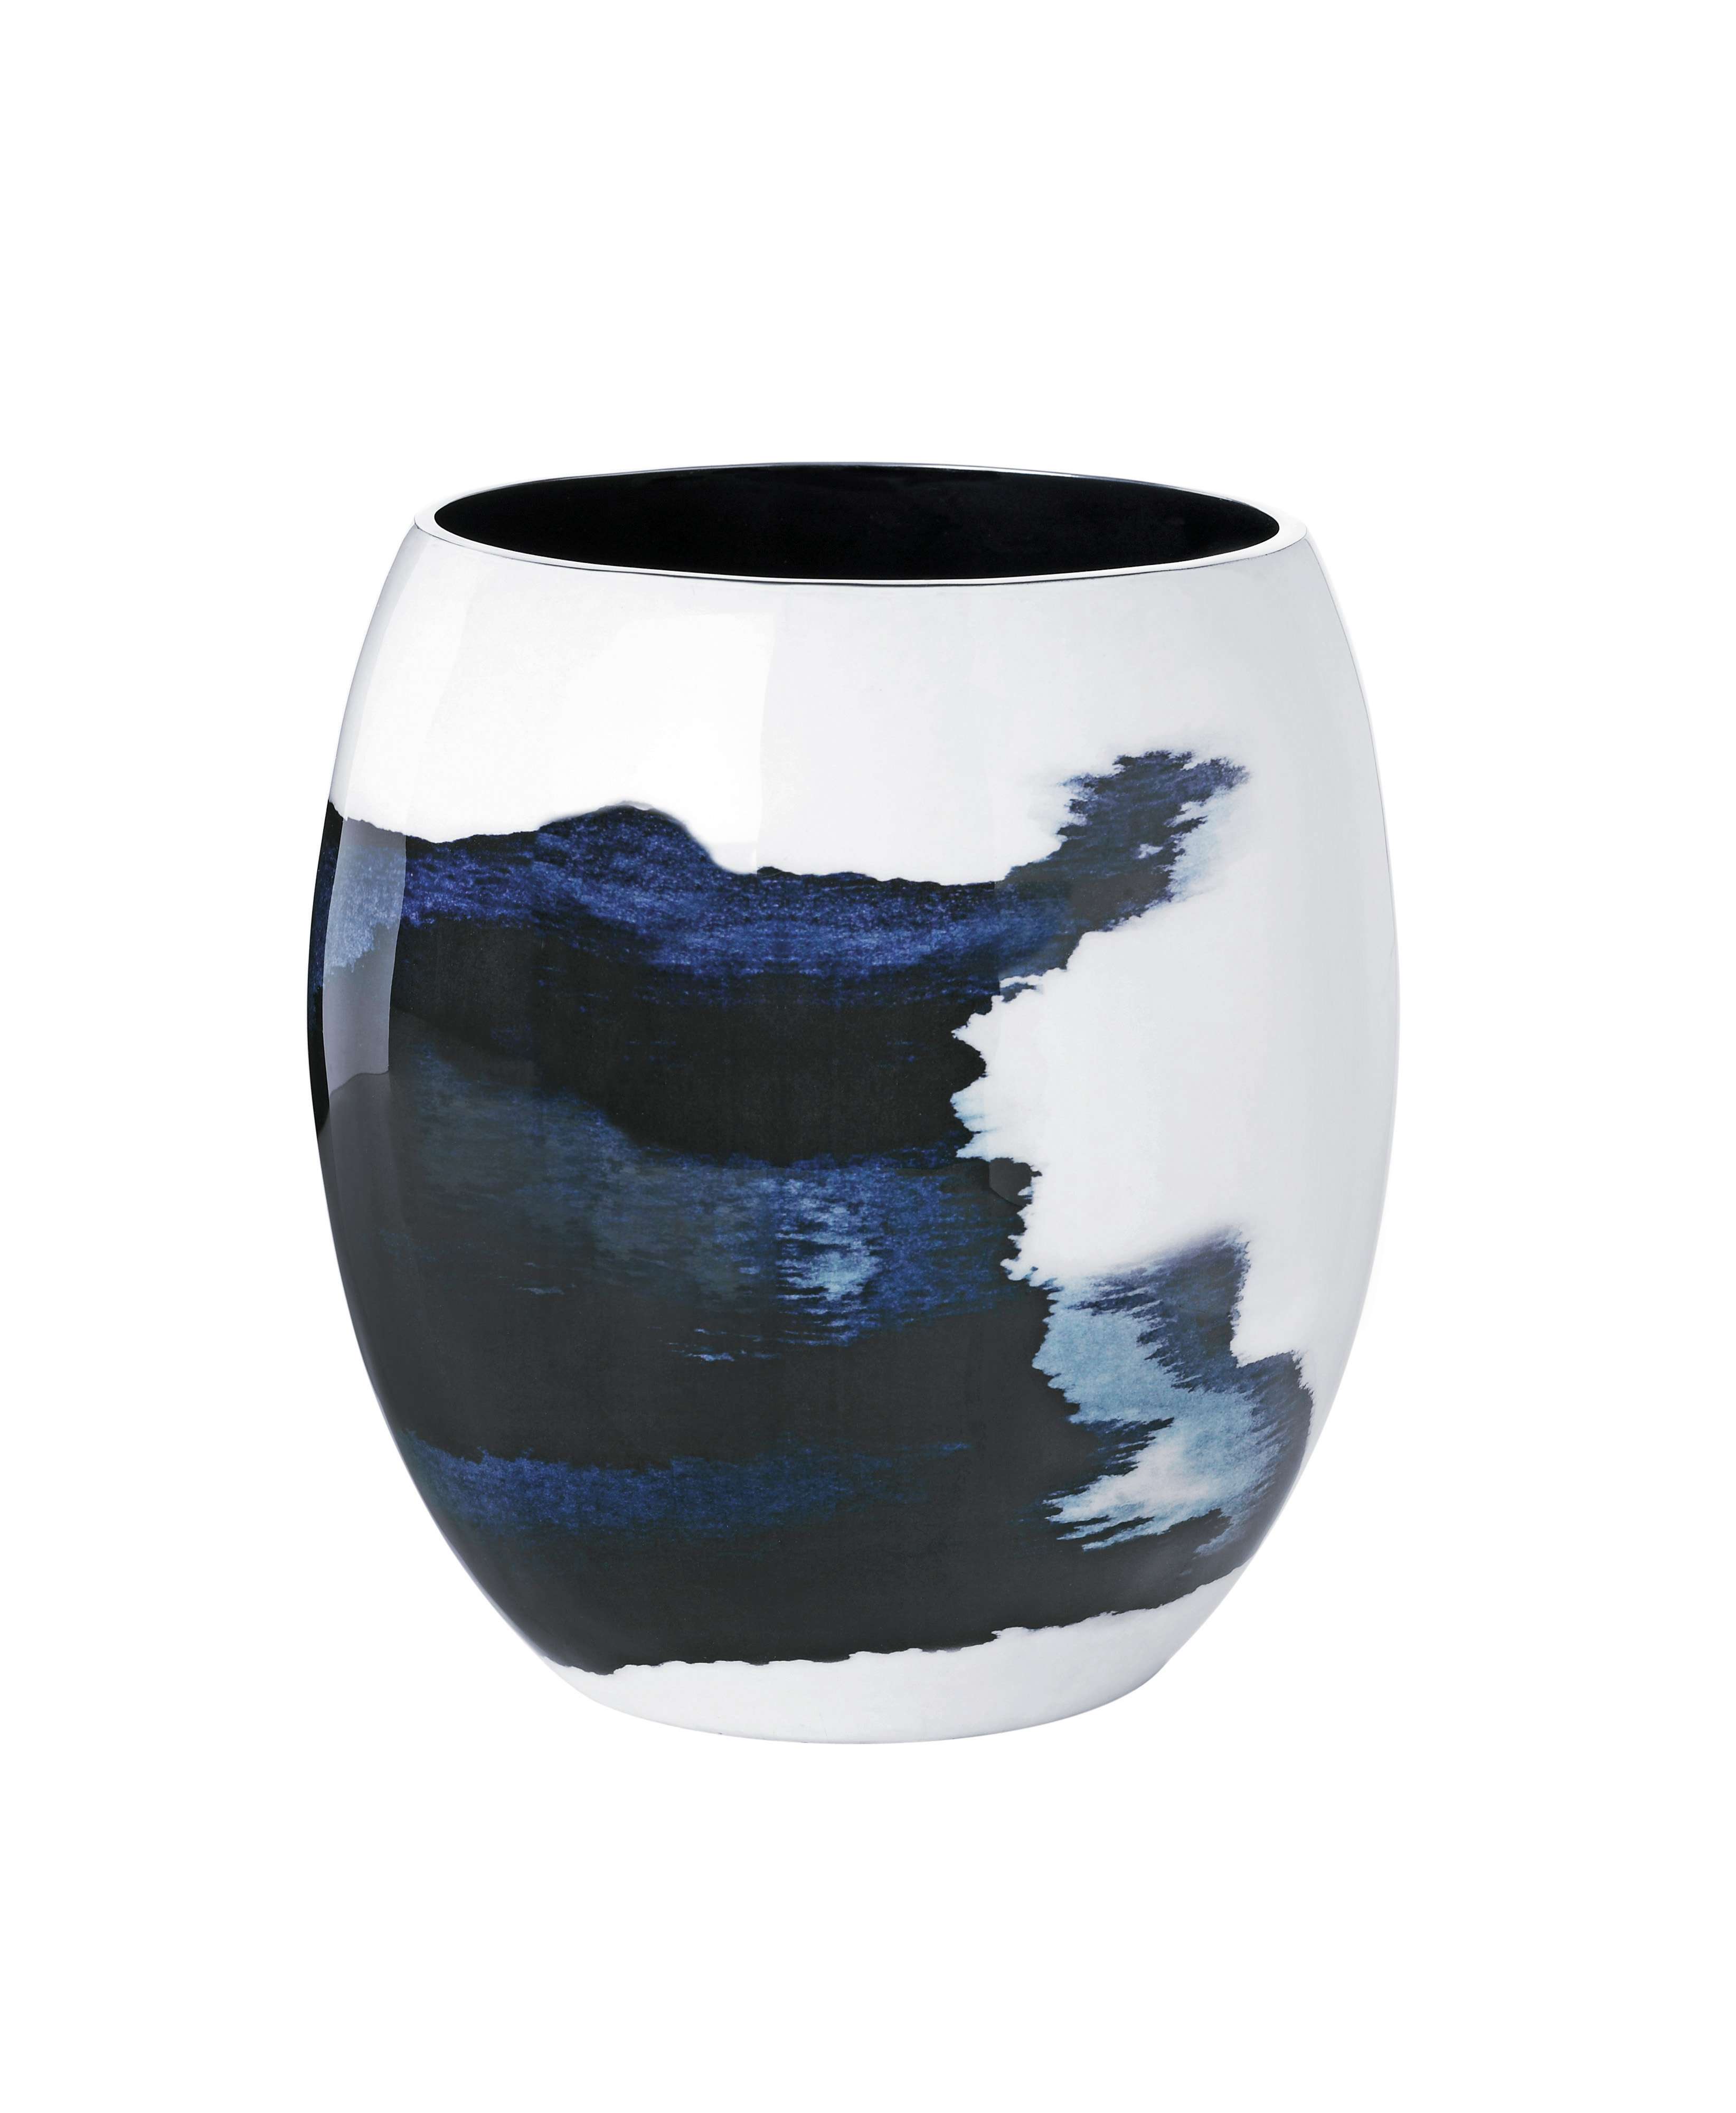 Stelton - Stockholm Aquatic Vase - Medium (450-21)